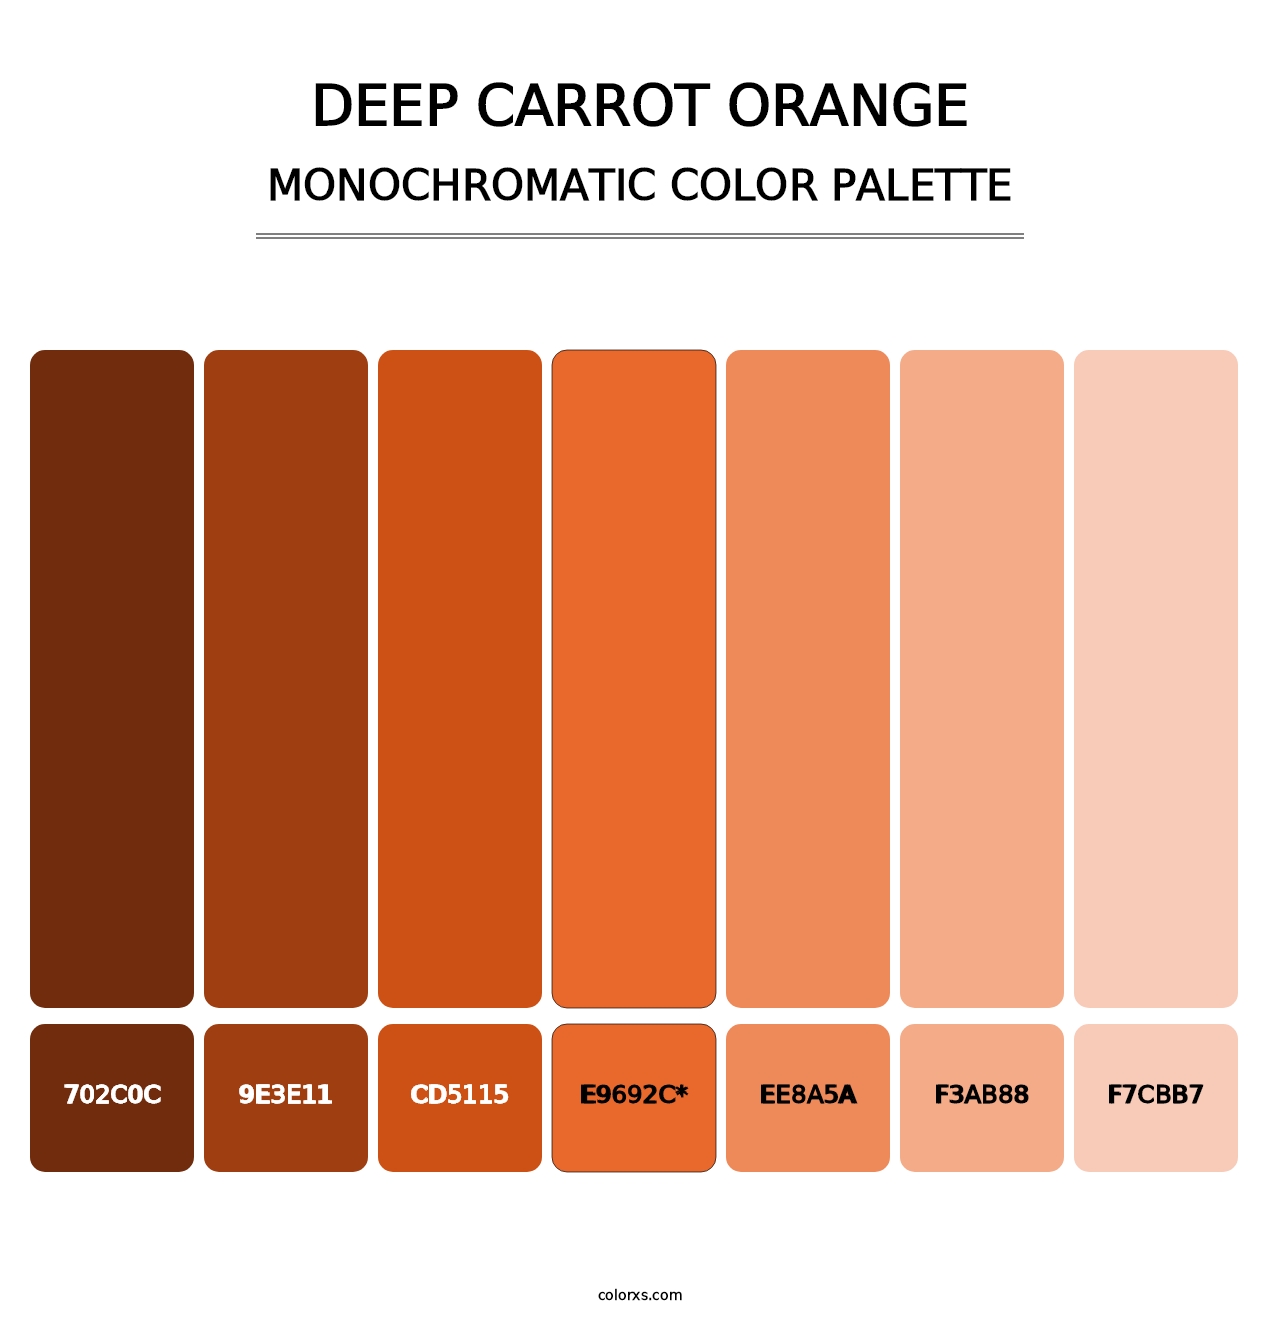 Deep Carrot Orange - Monochromatic Color Palette